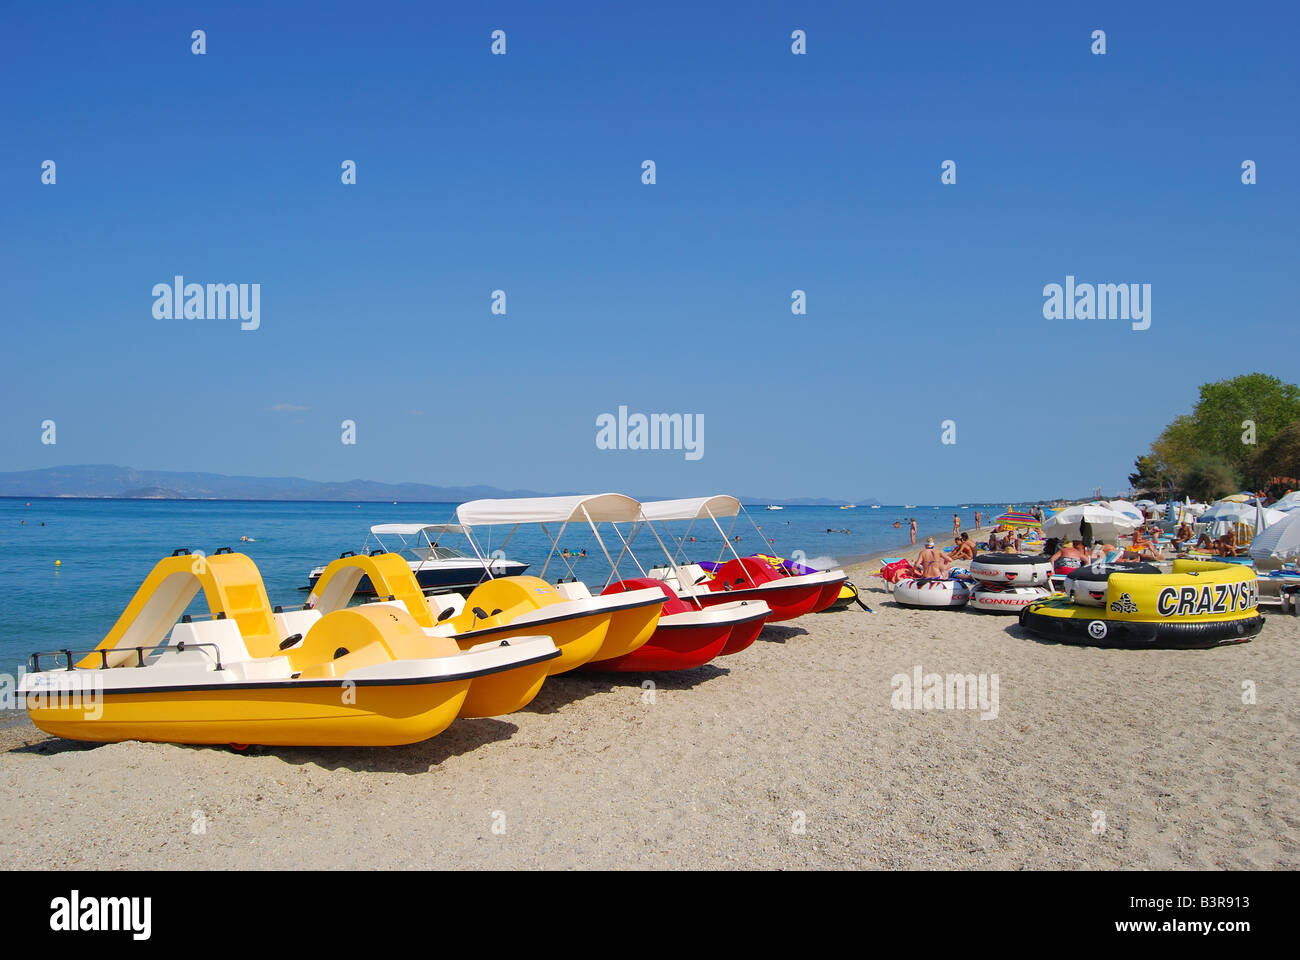 Beach view showing watersports equipment, Hanioti, Kassandra Peninsula, Chalkidiki, Central Macedonia, Greece Stock Photo